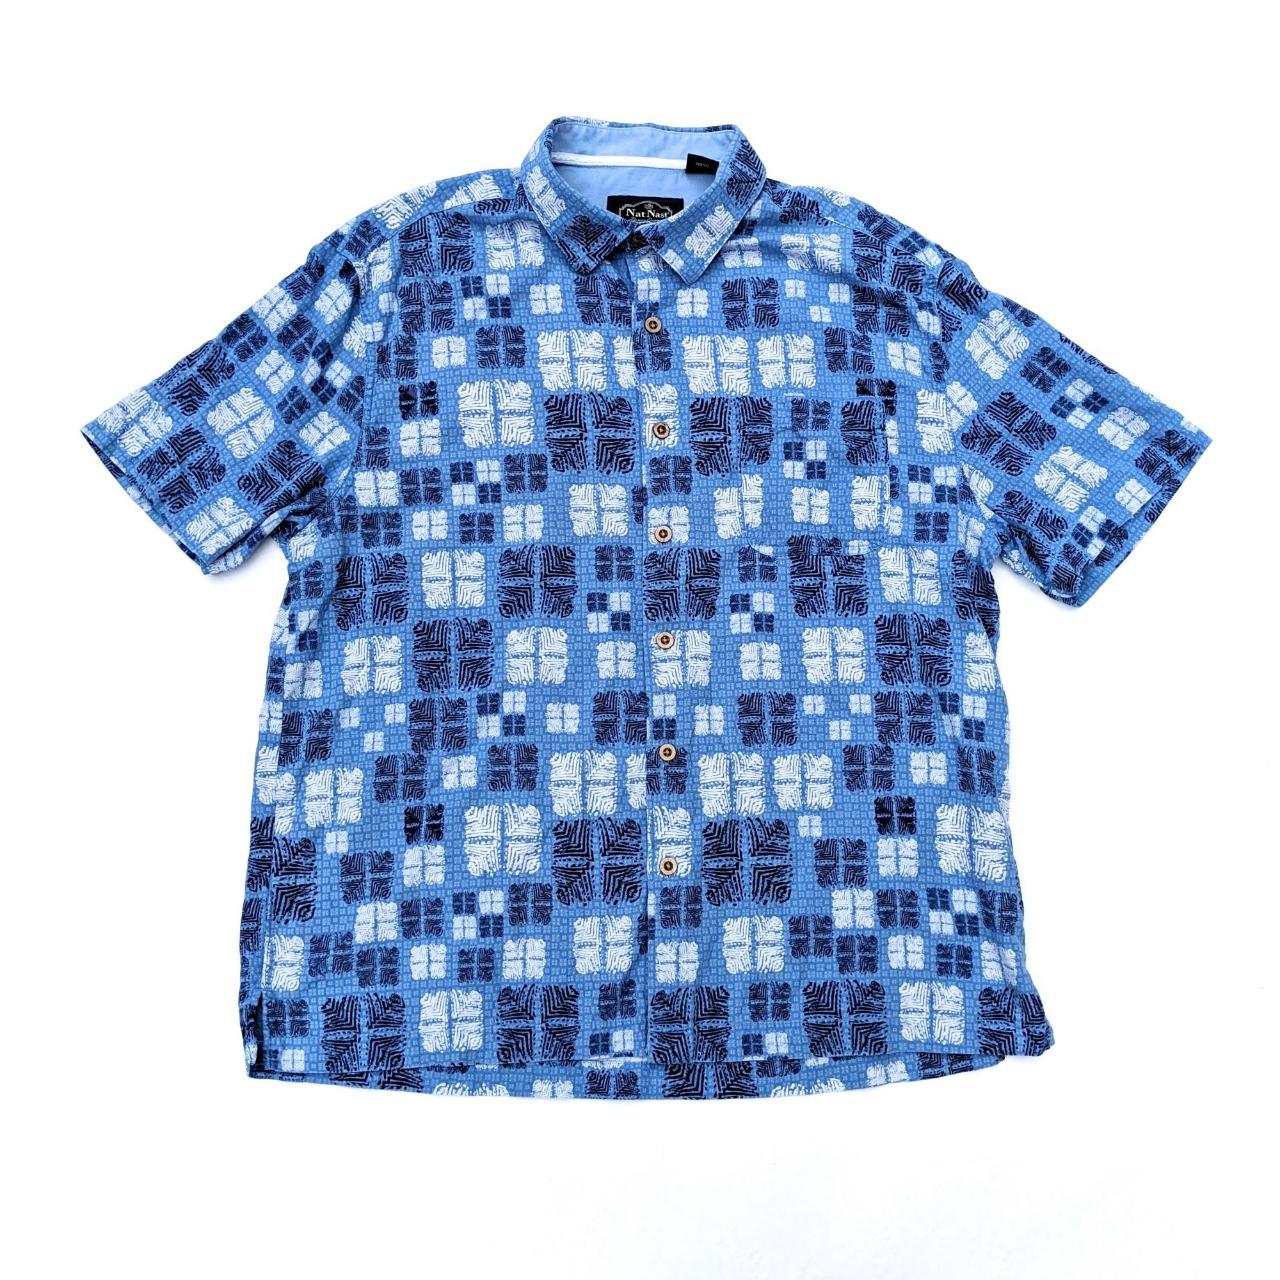 Nordstrom Men's Blue Shirt | Depop